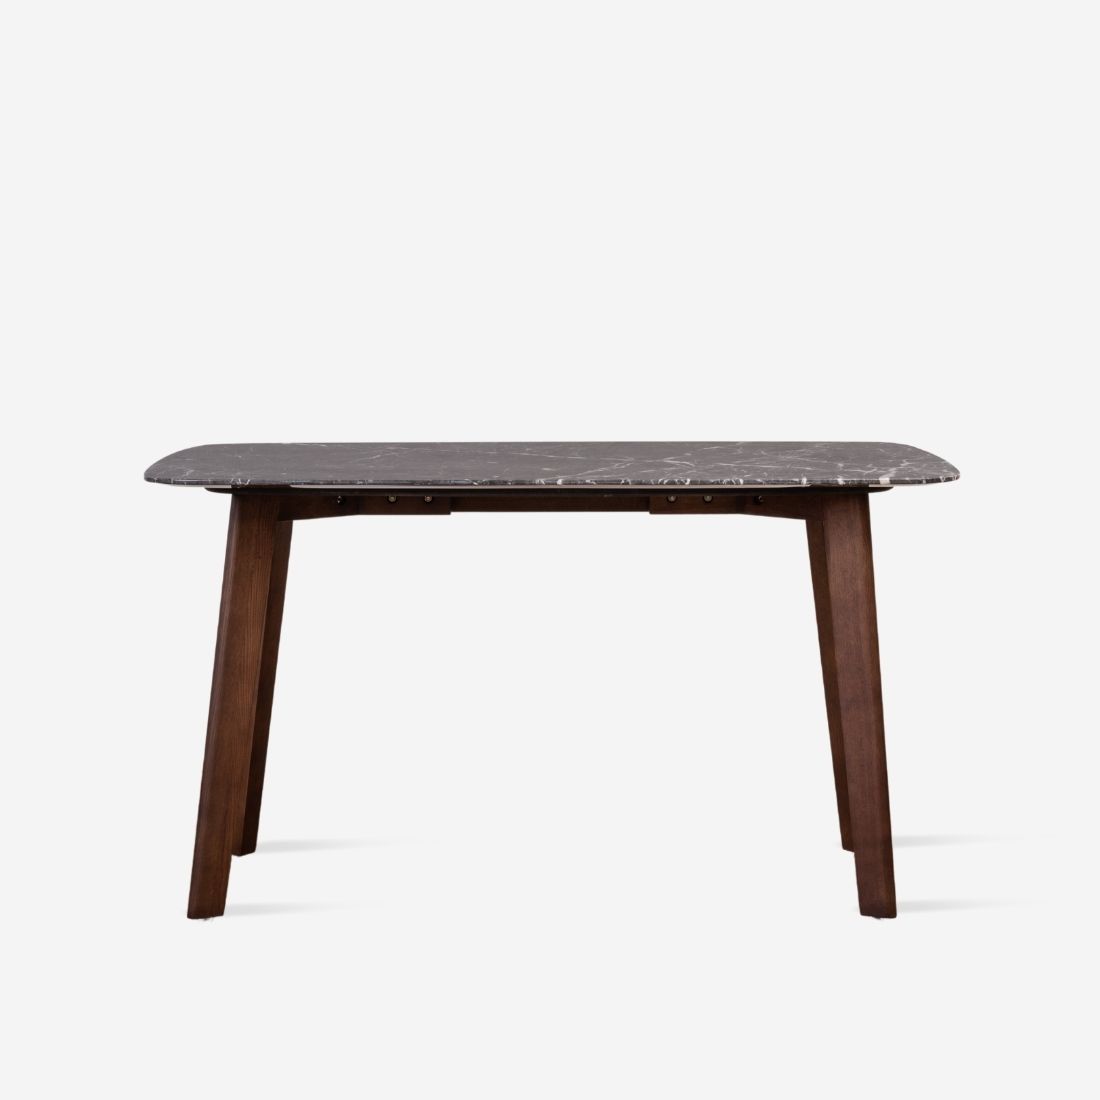 [SALE] NOVA Marble Table, Dark Grey L140 [In stock]